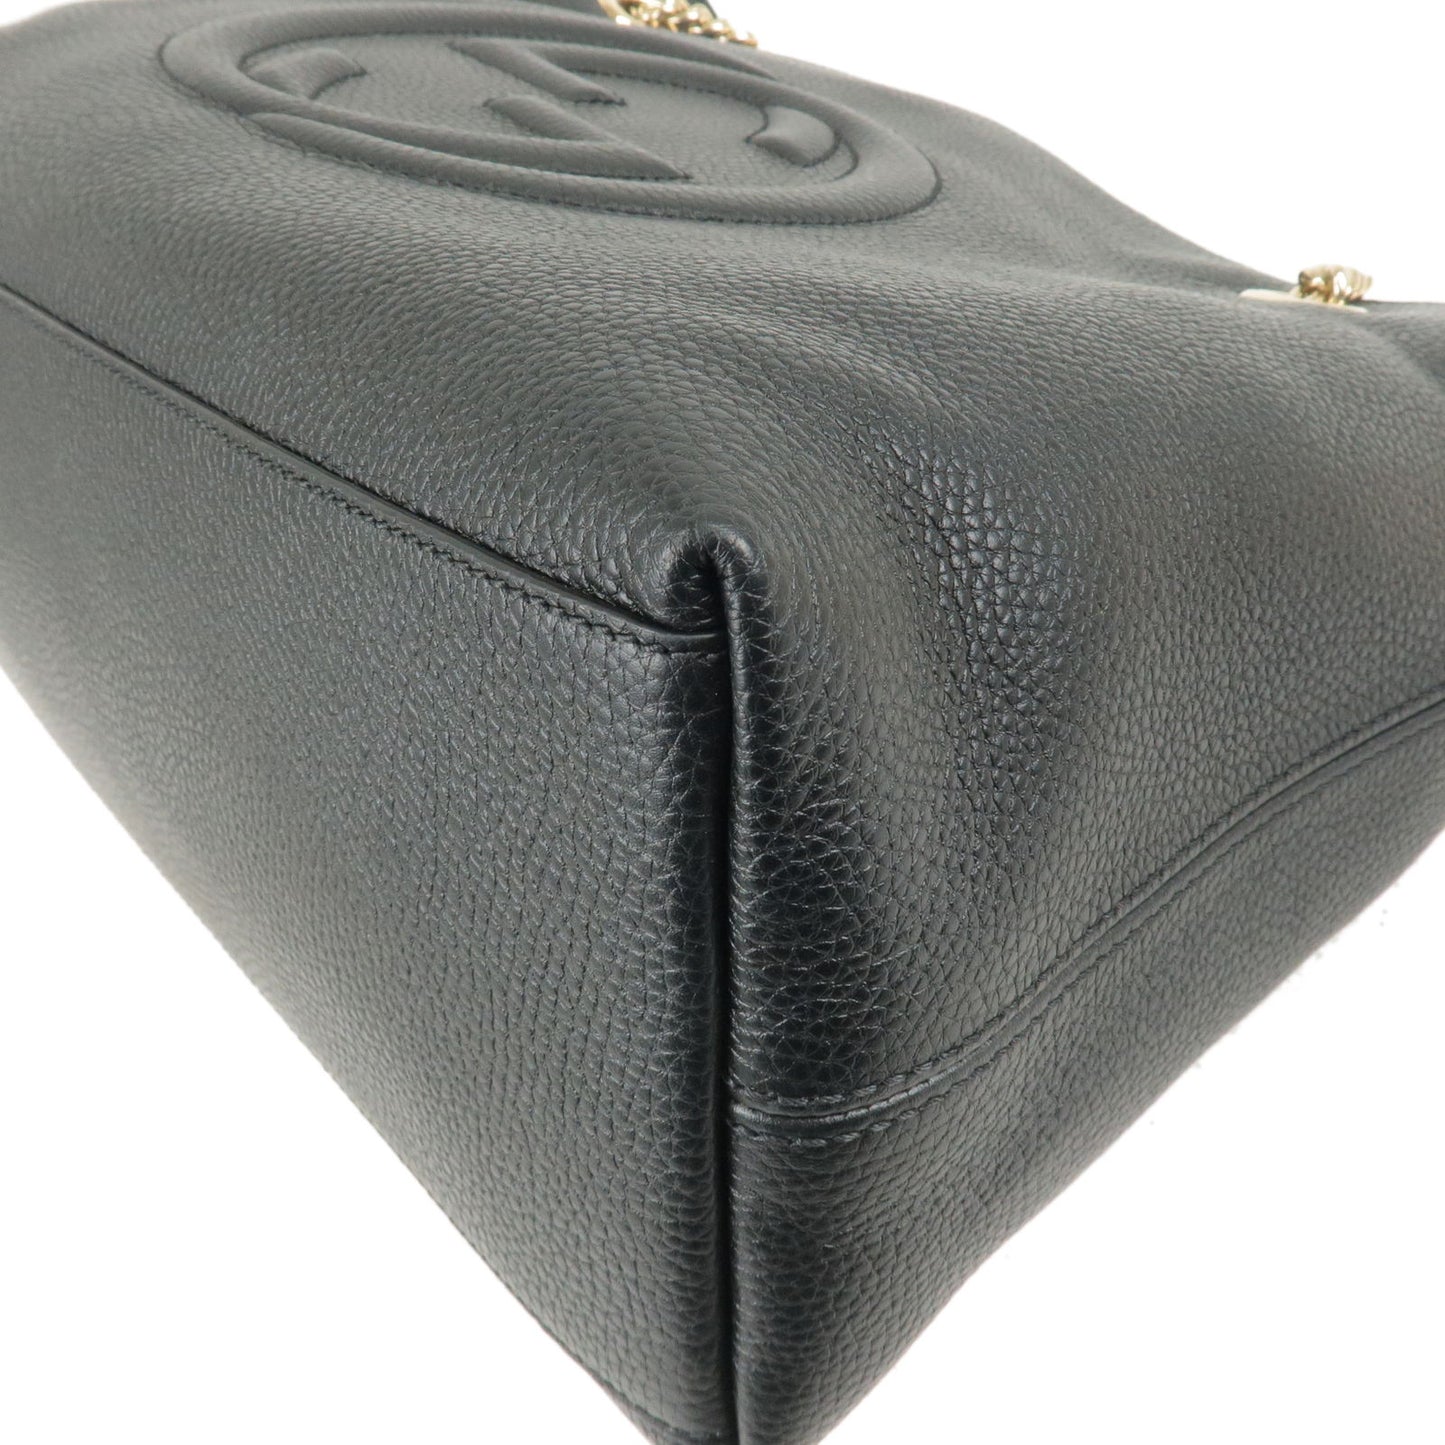 GUCCI SOHO Logo Leather Chain Shoulder Bag Tote Bag Black 536196